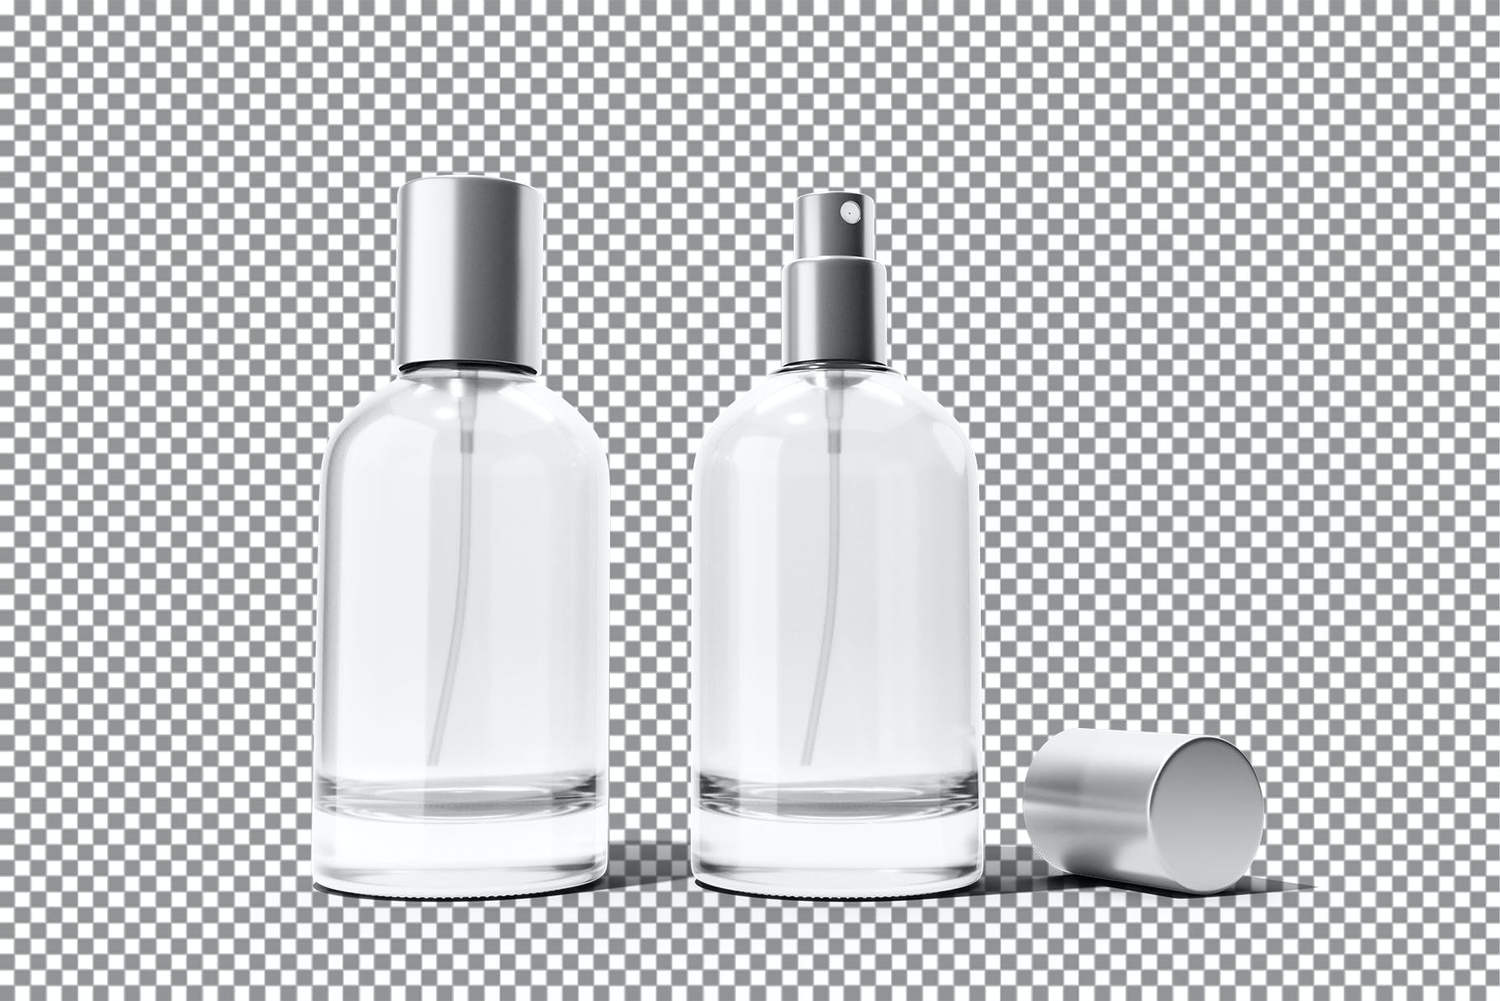 4516 4款香水喷雾瓶透明塑料玻璃瓶包装PS样机 50ml Perfume Bottle Mockup Vol@GOOODME.COM.2